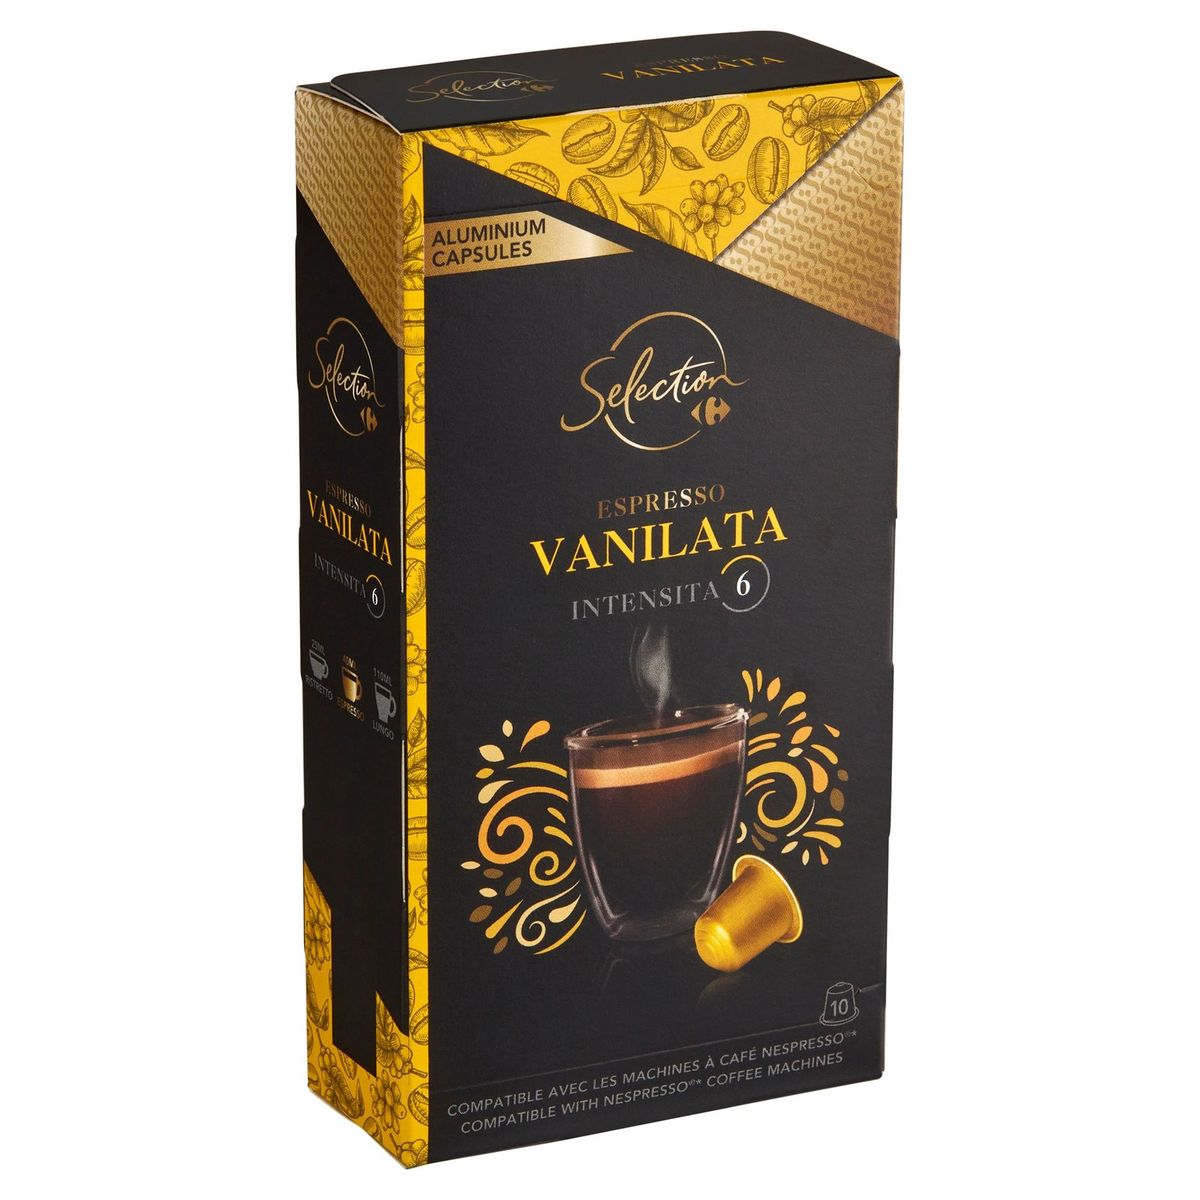 Carrefour Selection Espresso Vanilata 10 Capsules 52 g